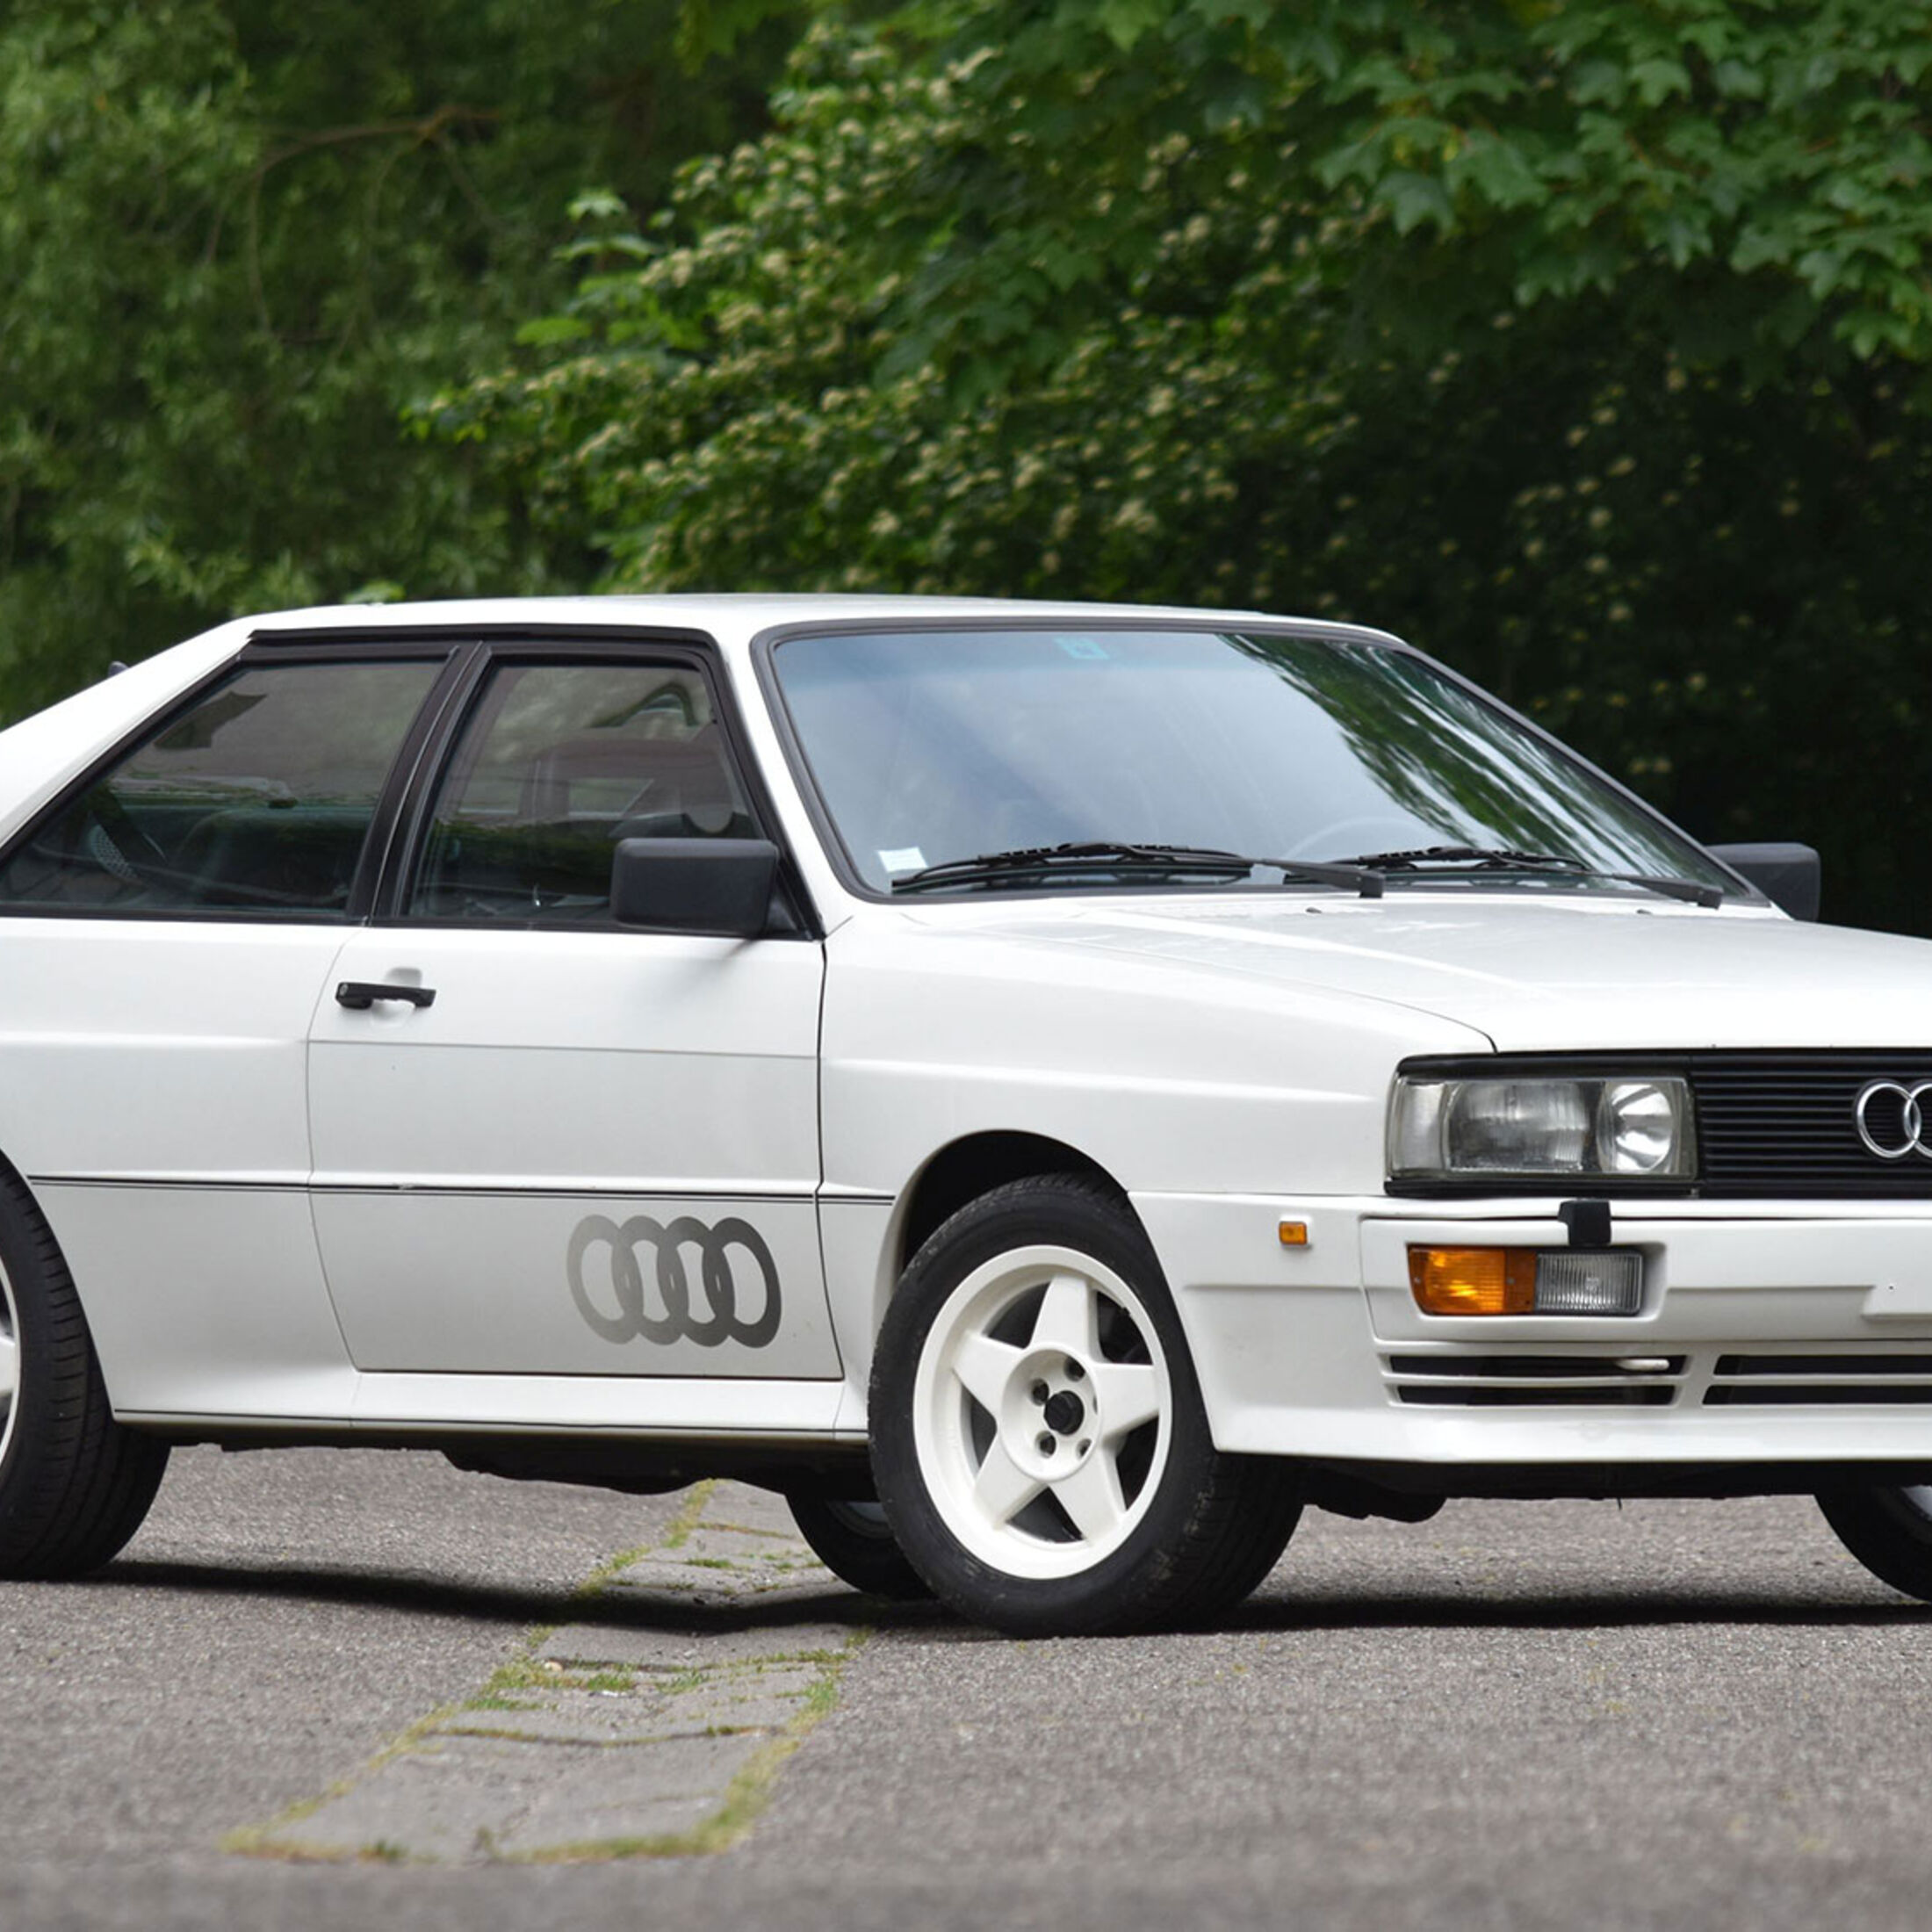 https://imgr1.auto-motor-und-sport.de/Audi-Quattro-1984-Ex-Horst-Dassler-Alpinweiss-jsonLd1x1-156ed0e5-2010325.jpg